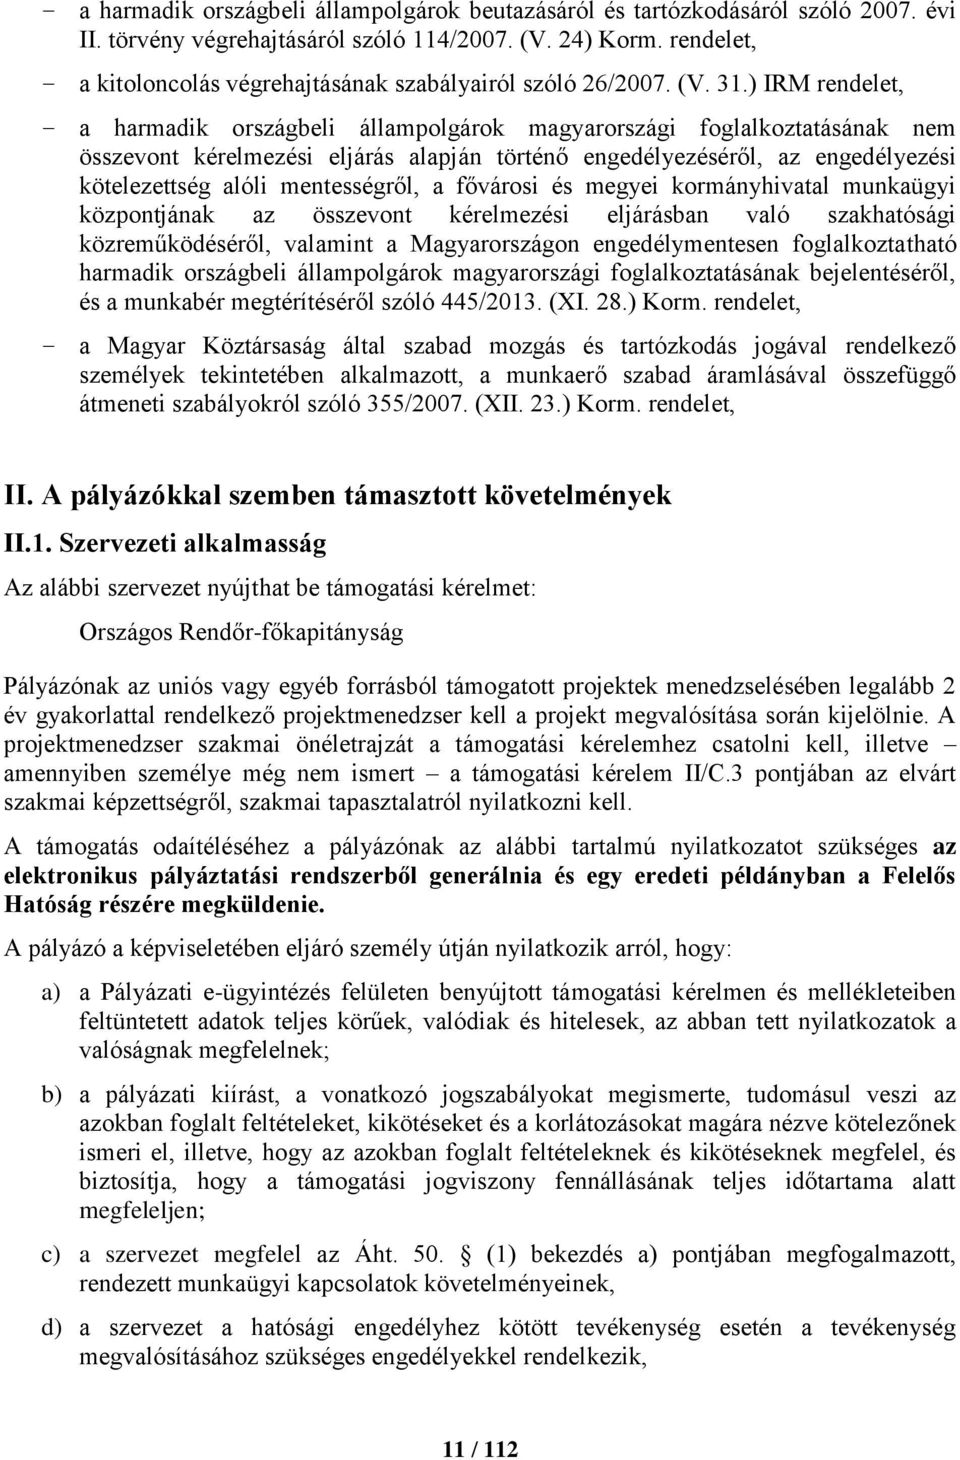 ) IRM rendelet, a harmadik országbeli állampolgárok magyarországi foglalkoztatásának nem összevont kérelmezési eljárás alapján történő engedélyezéséről, az engedélyezési kötelezettség alóli